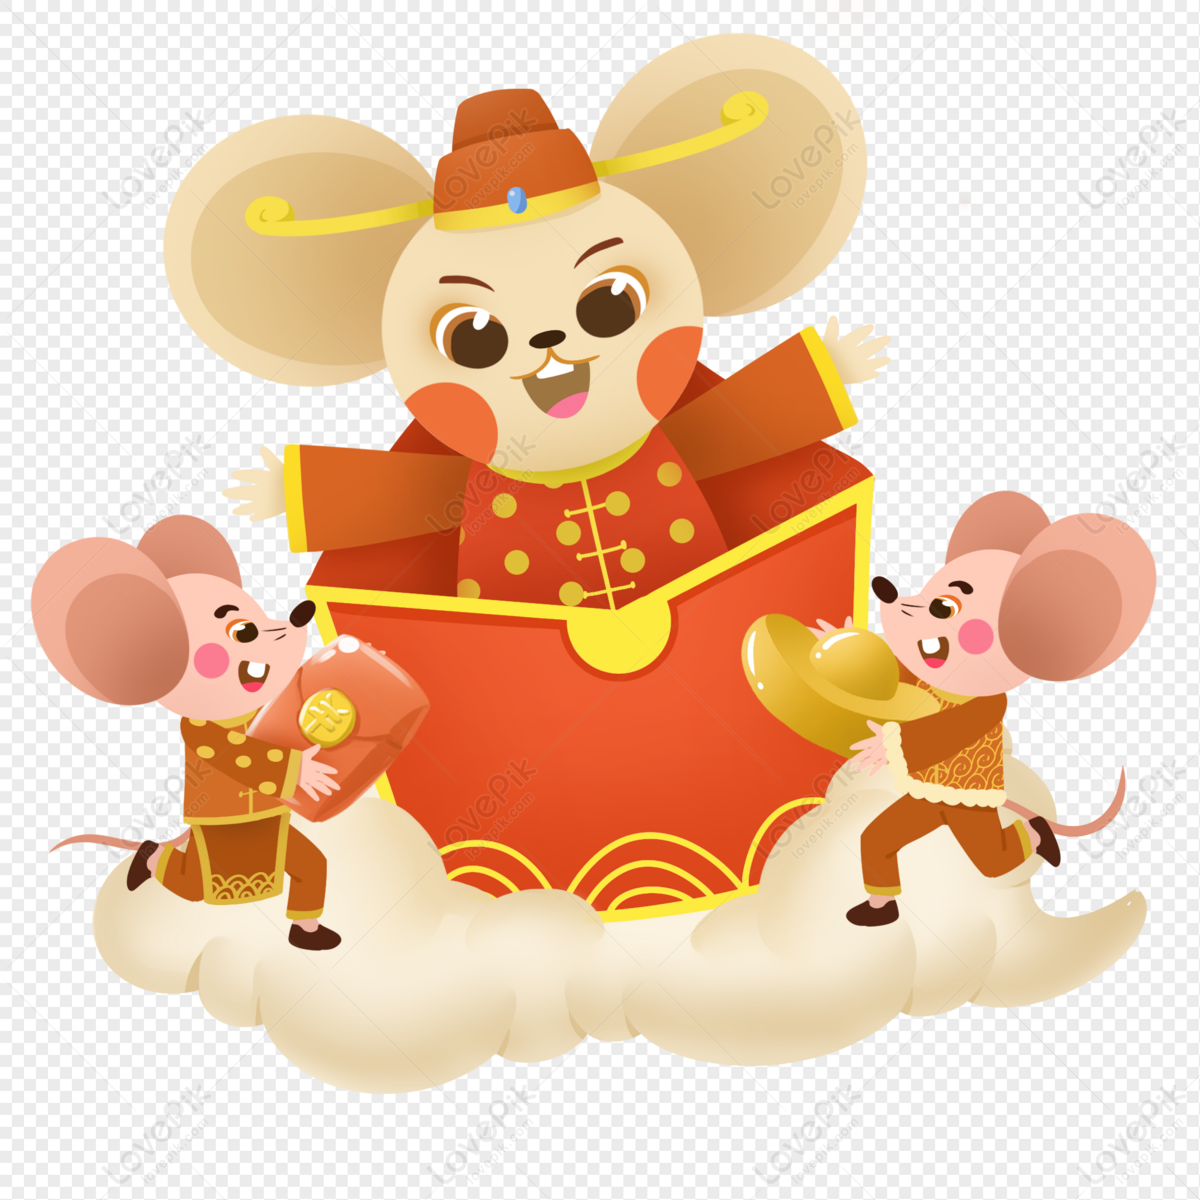 Năm Con Chuột là một trong những biểu tượng phổ biến nhất của văn hóa phương Đông. Với sự đáng yêu của nó, Năm Con Chuột sẽ đưa bạn vào một thế giới đầy sự trẻ trung và năng động. Khám phá ngay một loạt những hình ảnh Năm Con Chuột đáng yêu và độc đáo tại đây!